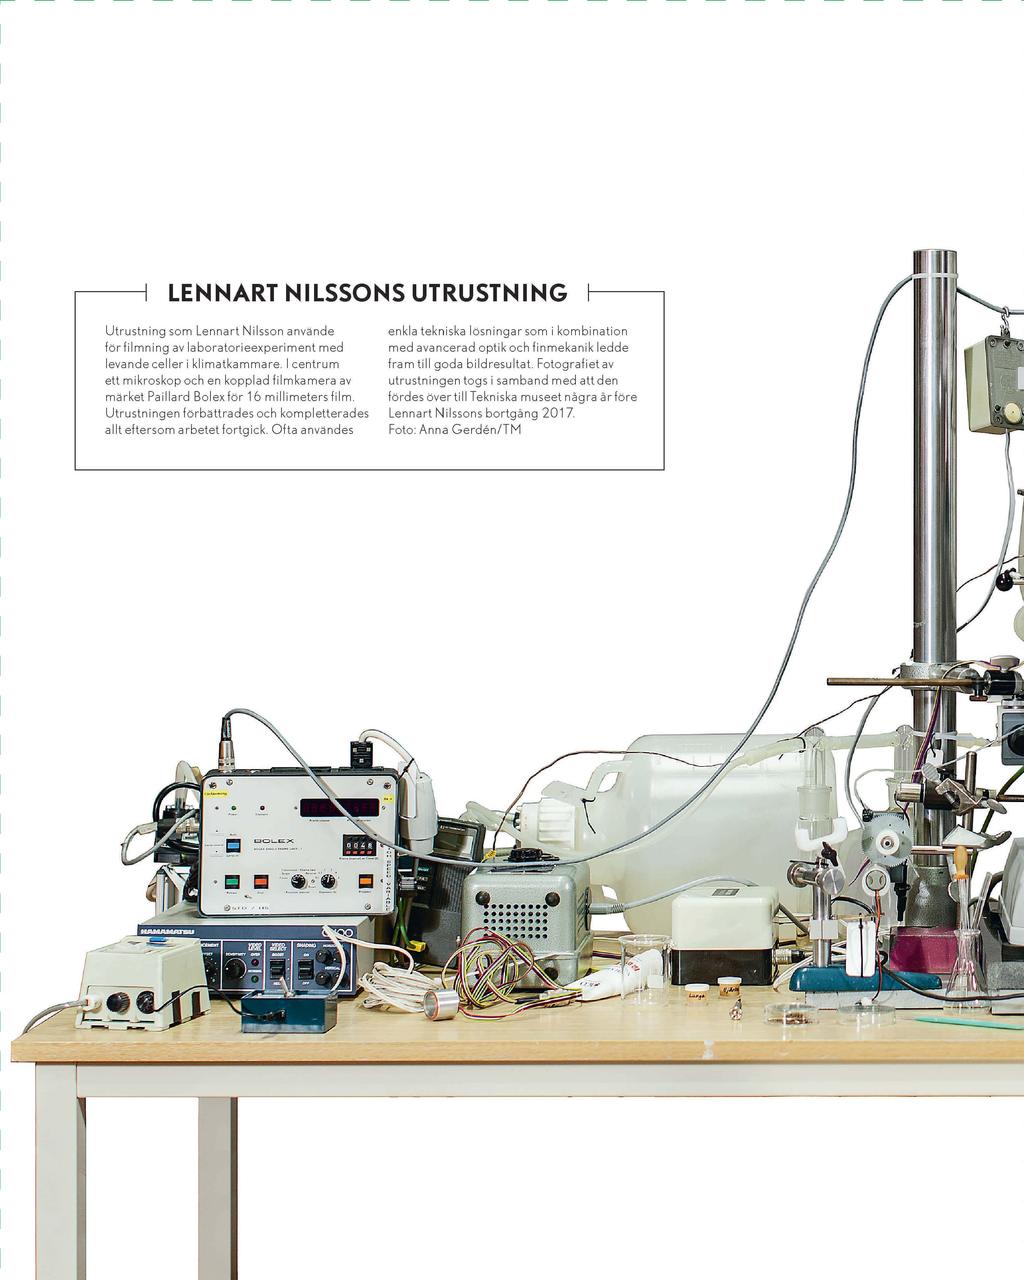 I I LENNART NILSSONS UTRUSTNING Utrustning som Lennart Nilsson använde forfilmning av laboratorieexperiment med levande celler i klimatkammare.